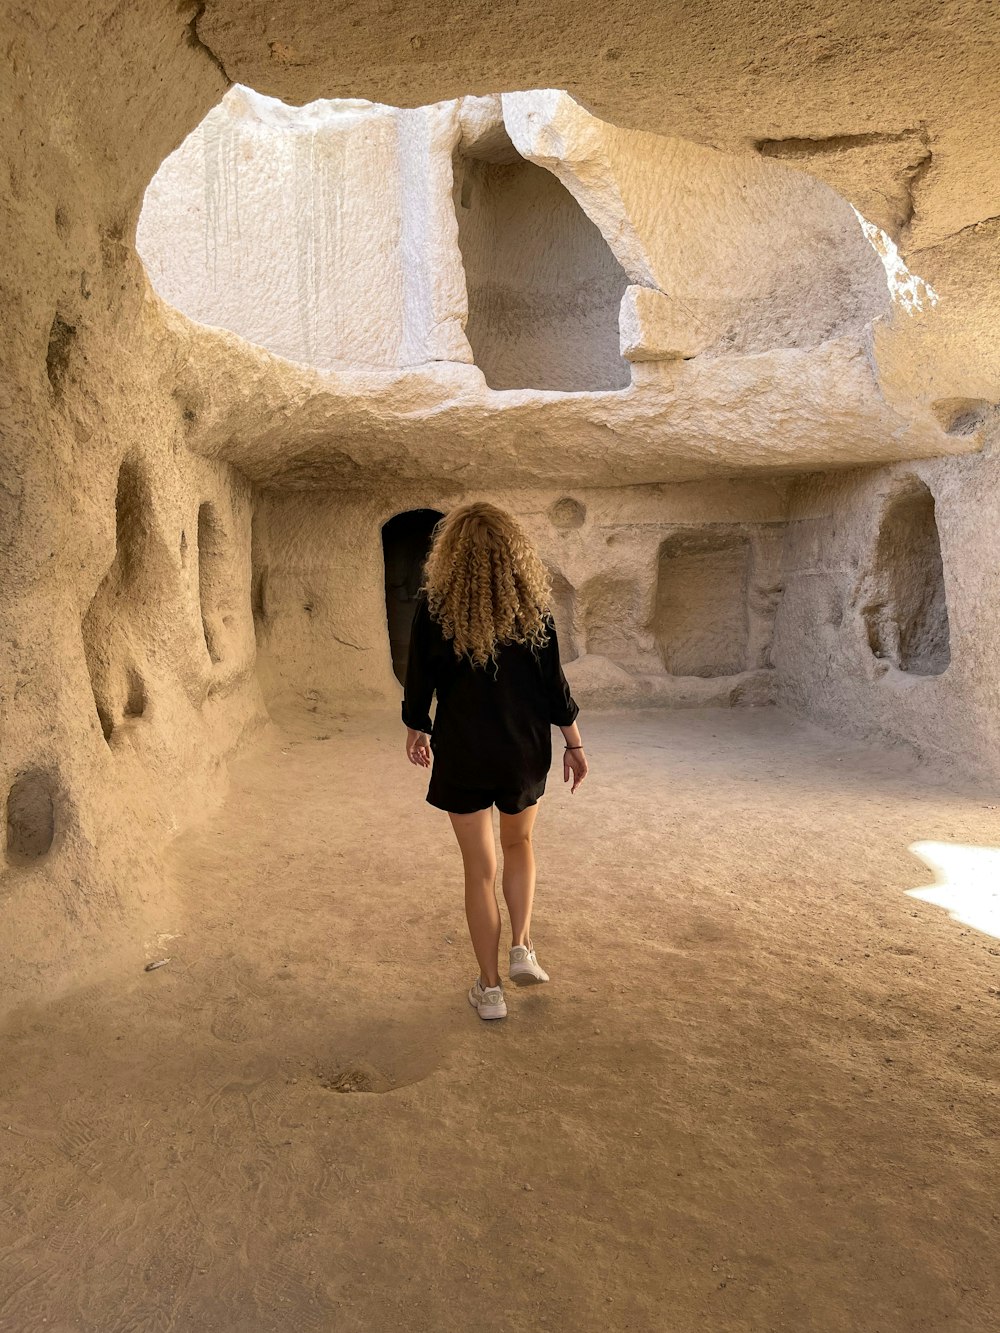 Una donna sta camminando attraverso un'area simile a una grotta